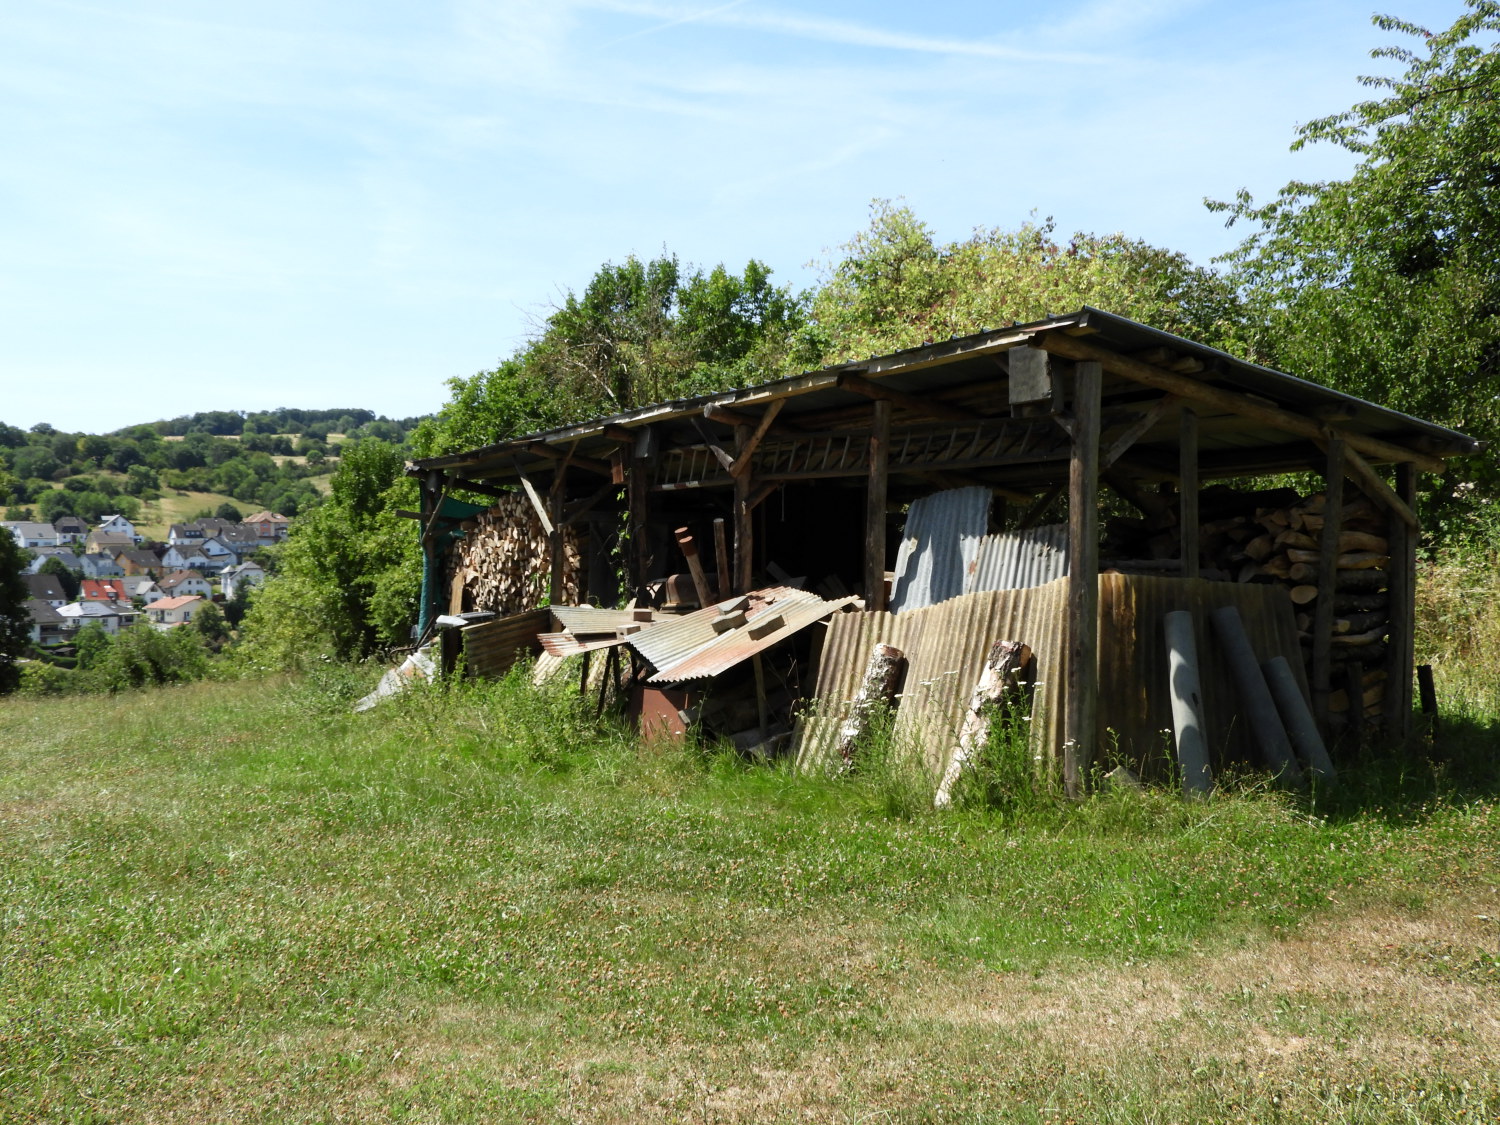 Field shed at Konigsstuhl